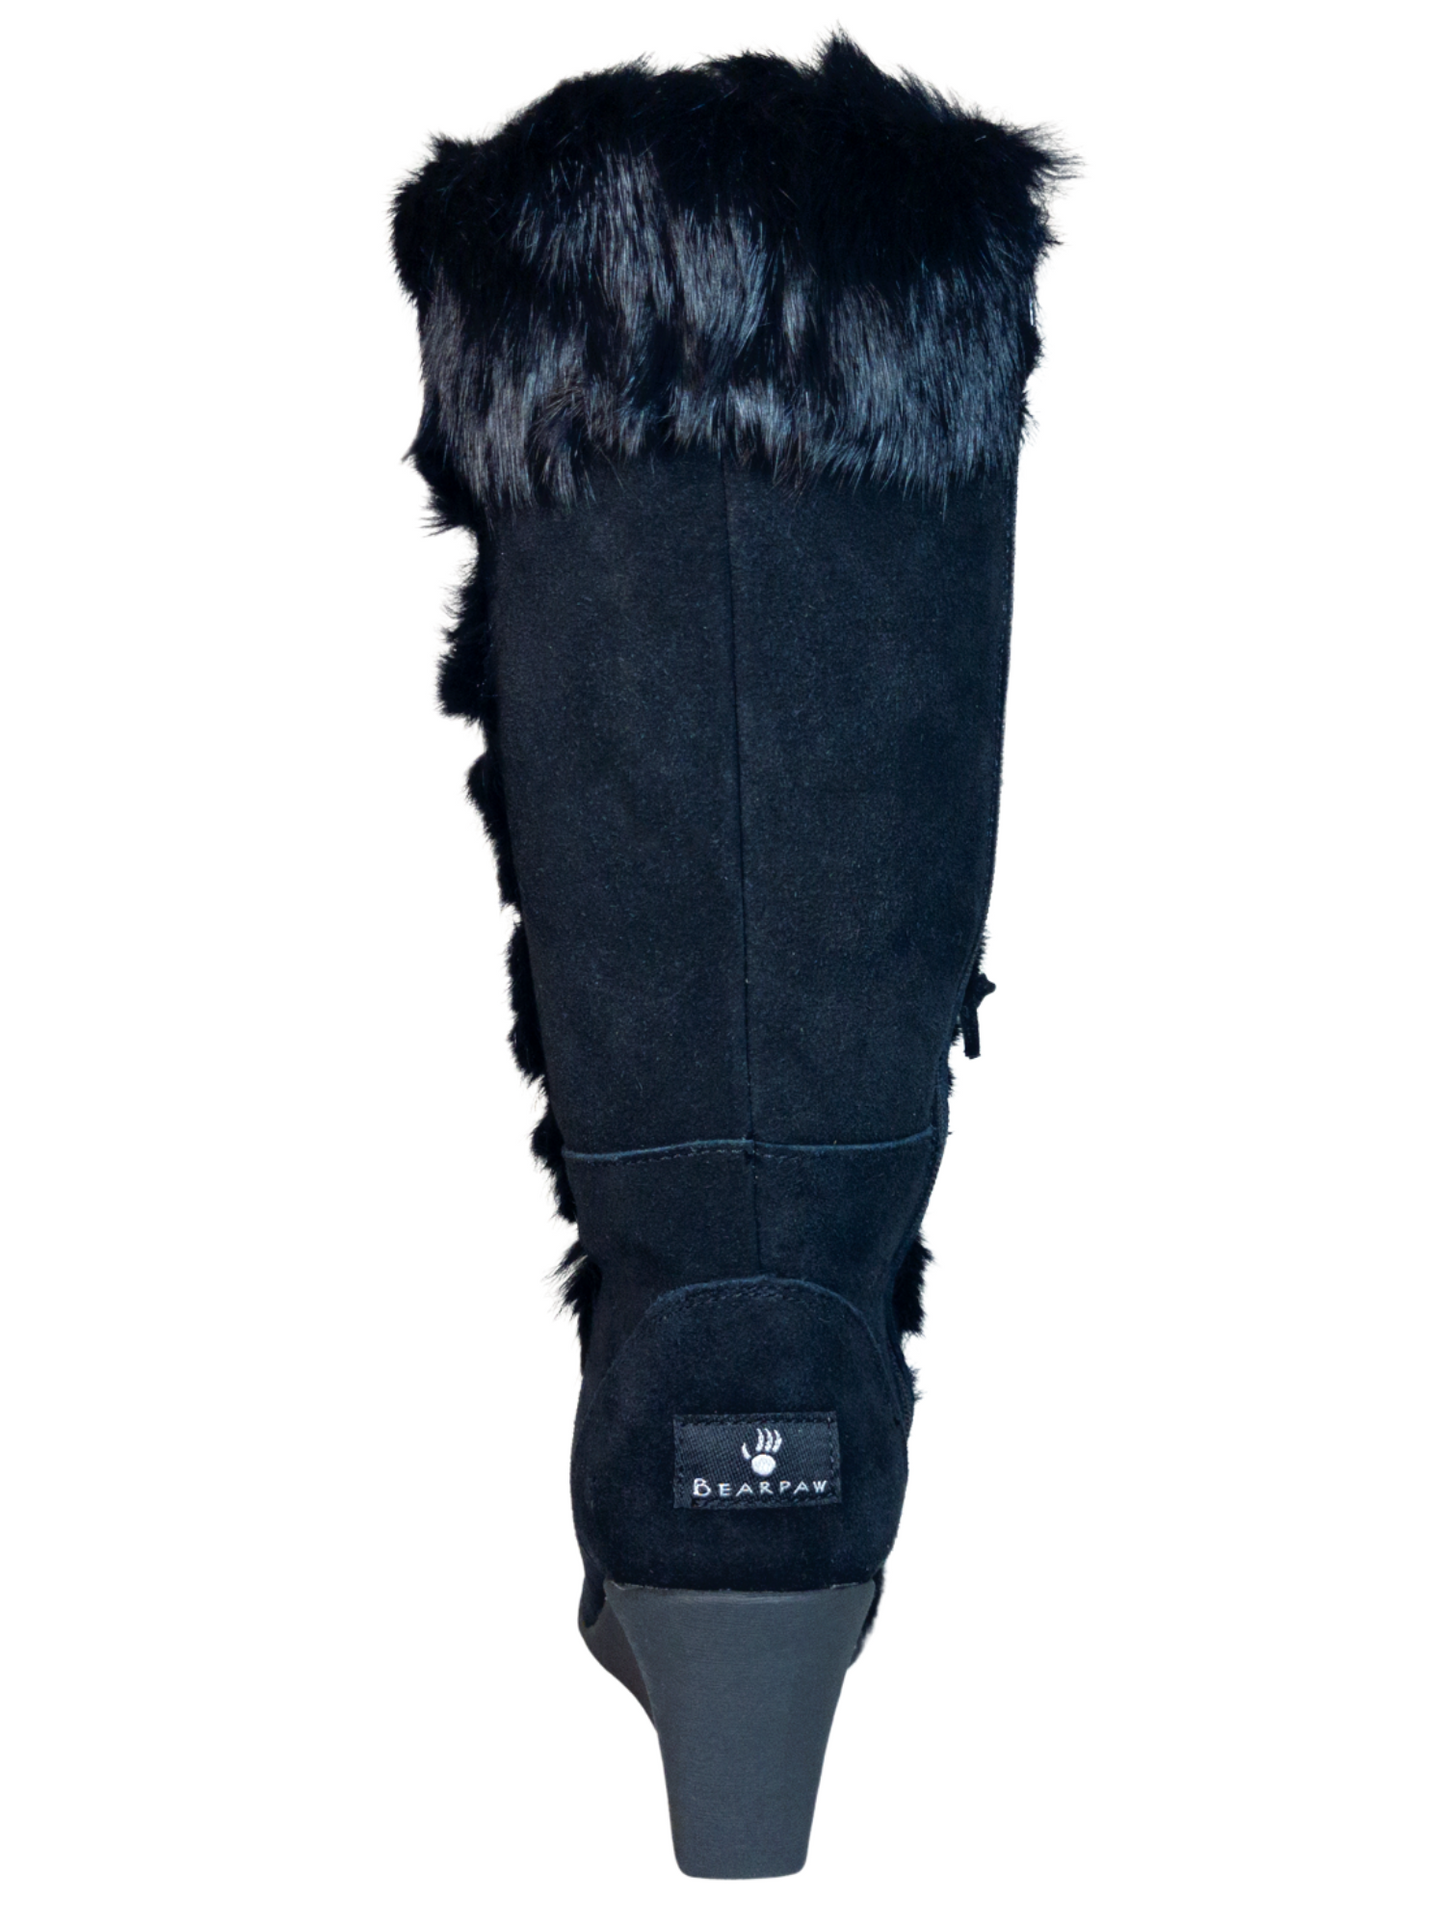 Botas de Invierno de Cuña de Piel Gamuza/Pelo de Conejo para Mujer 'Bearpaw' - ID: 7132 Winter Boots Bearpaw 